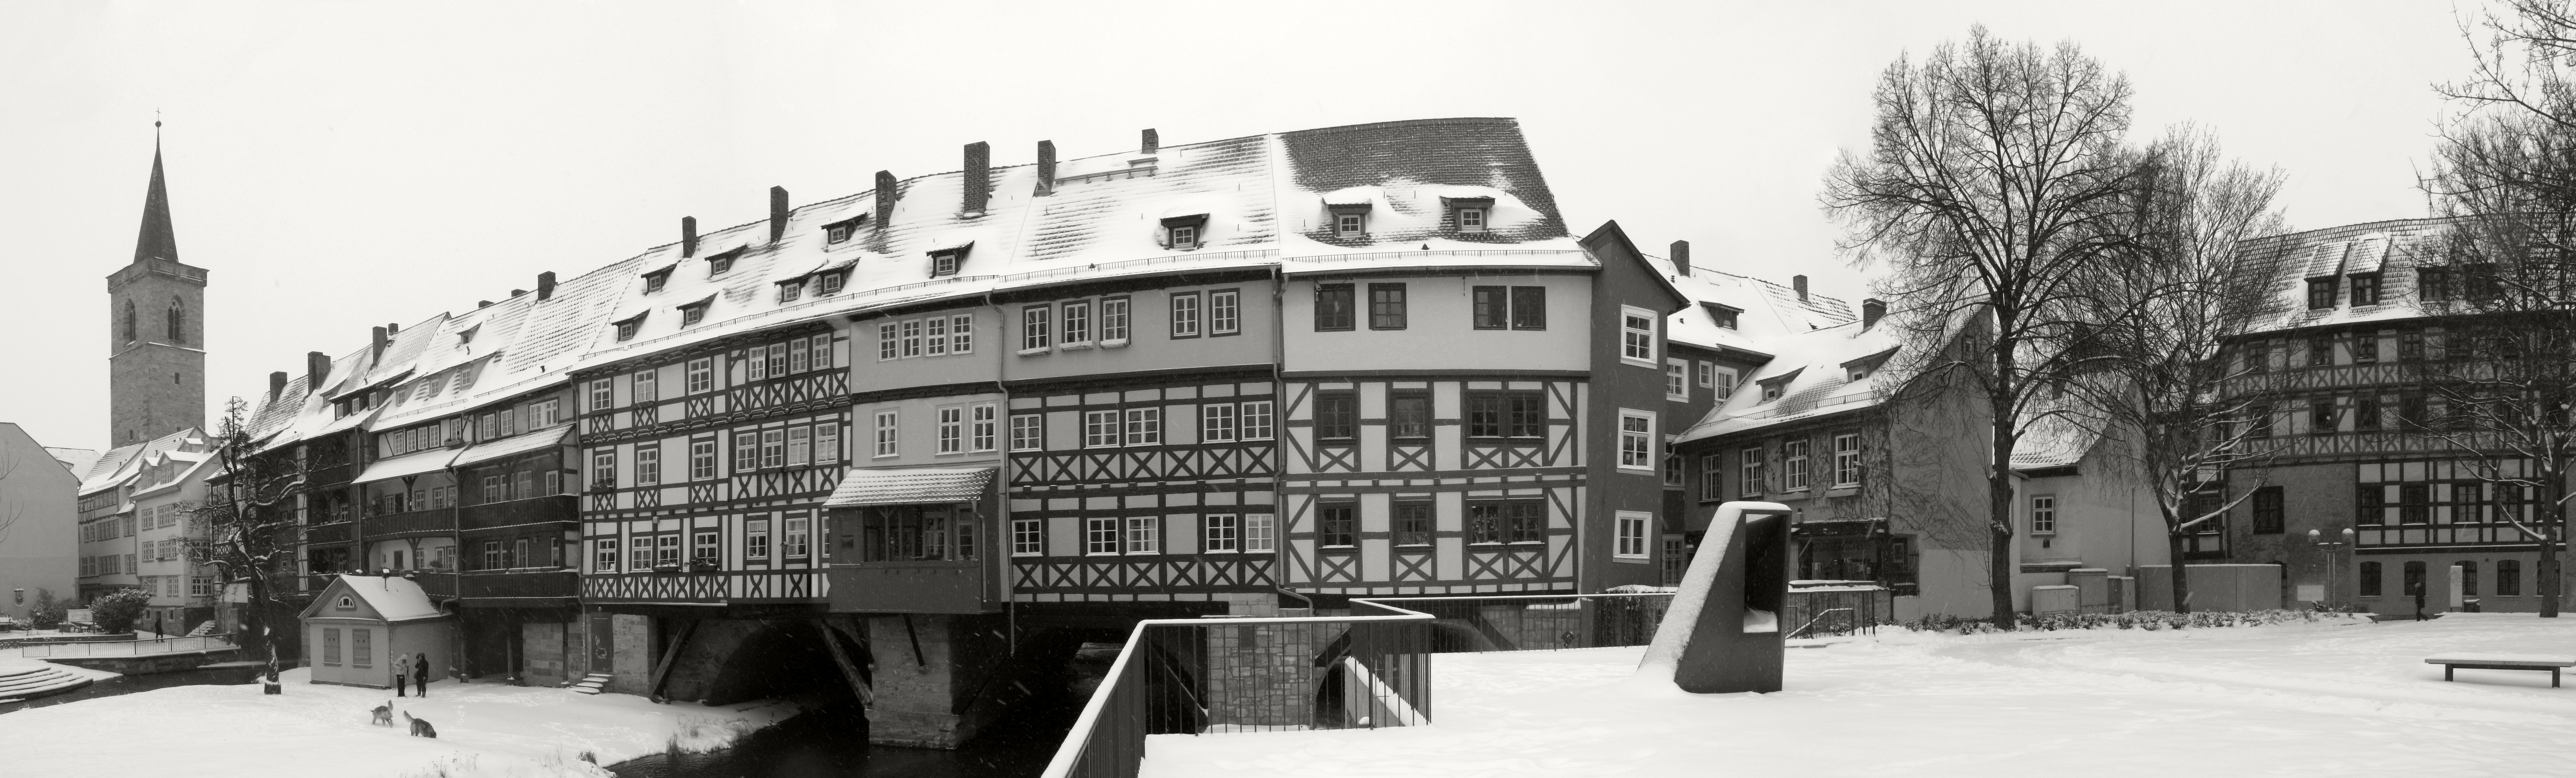 Krämerbrücke im Winter